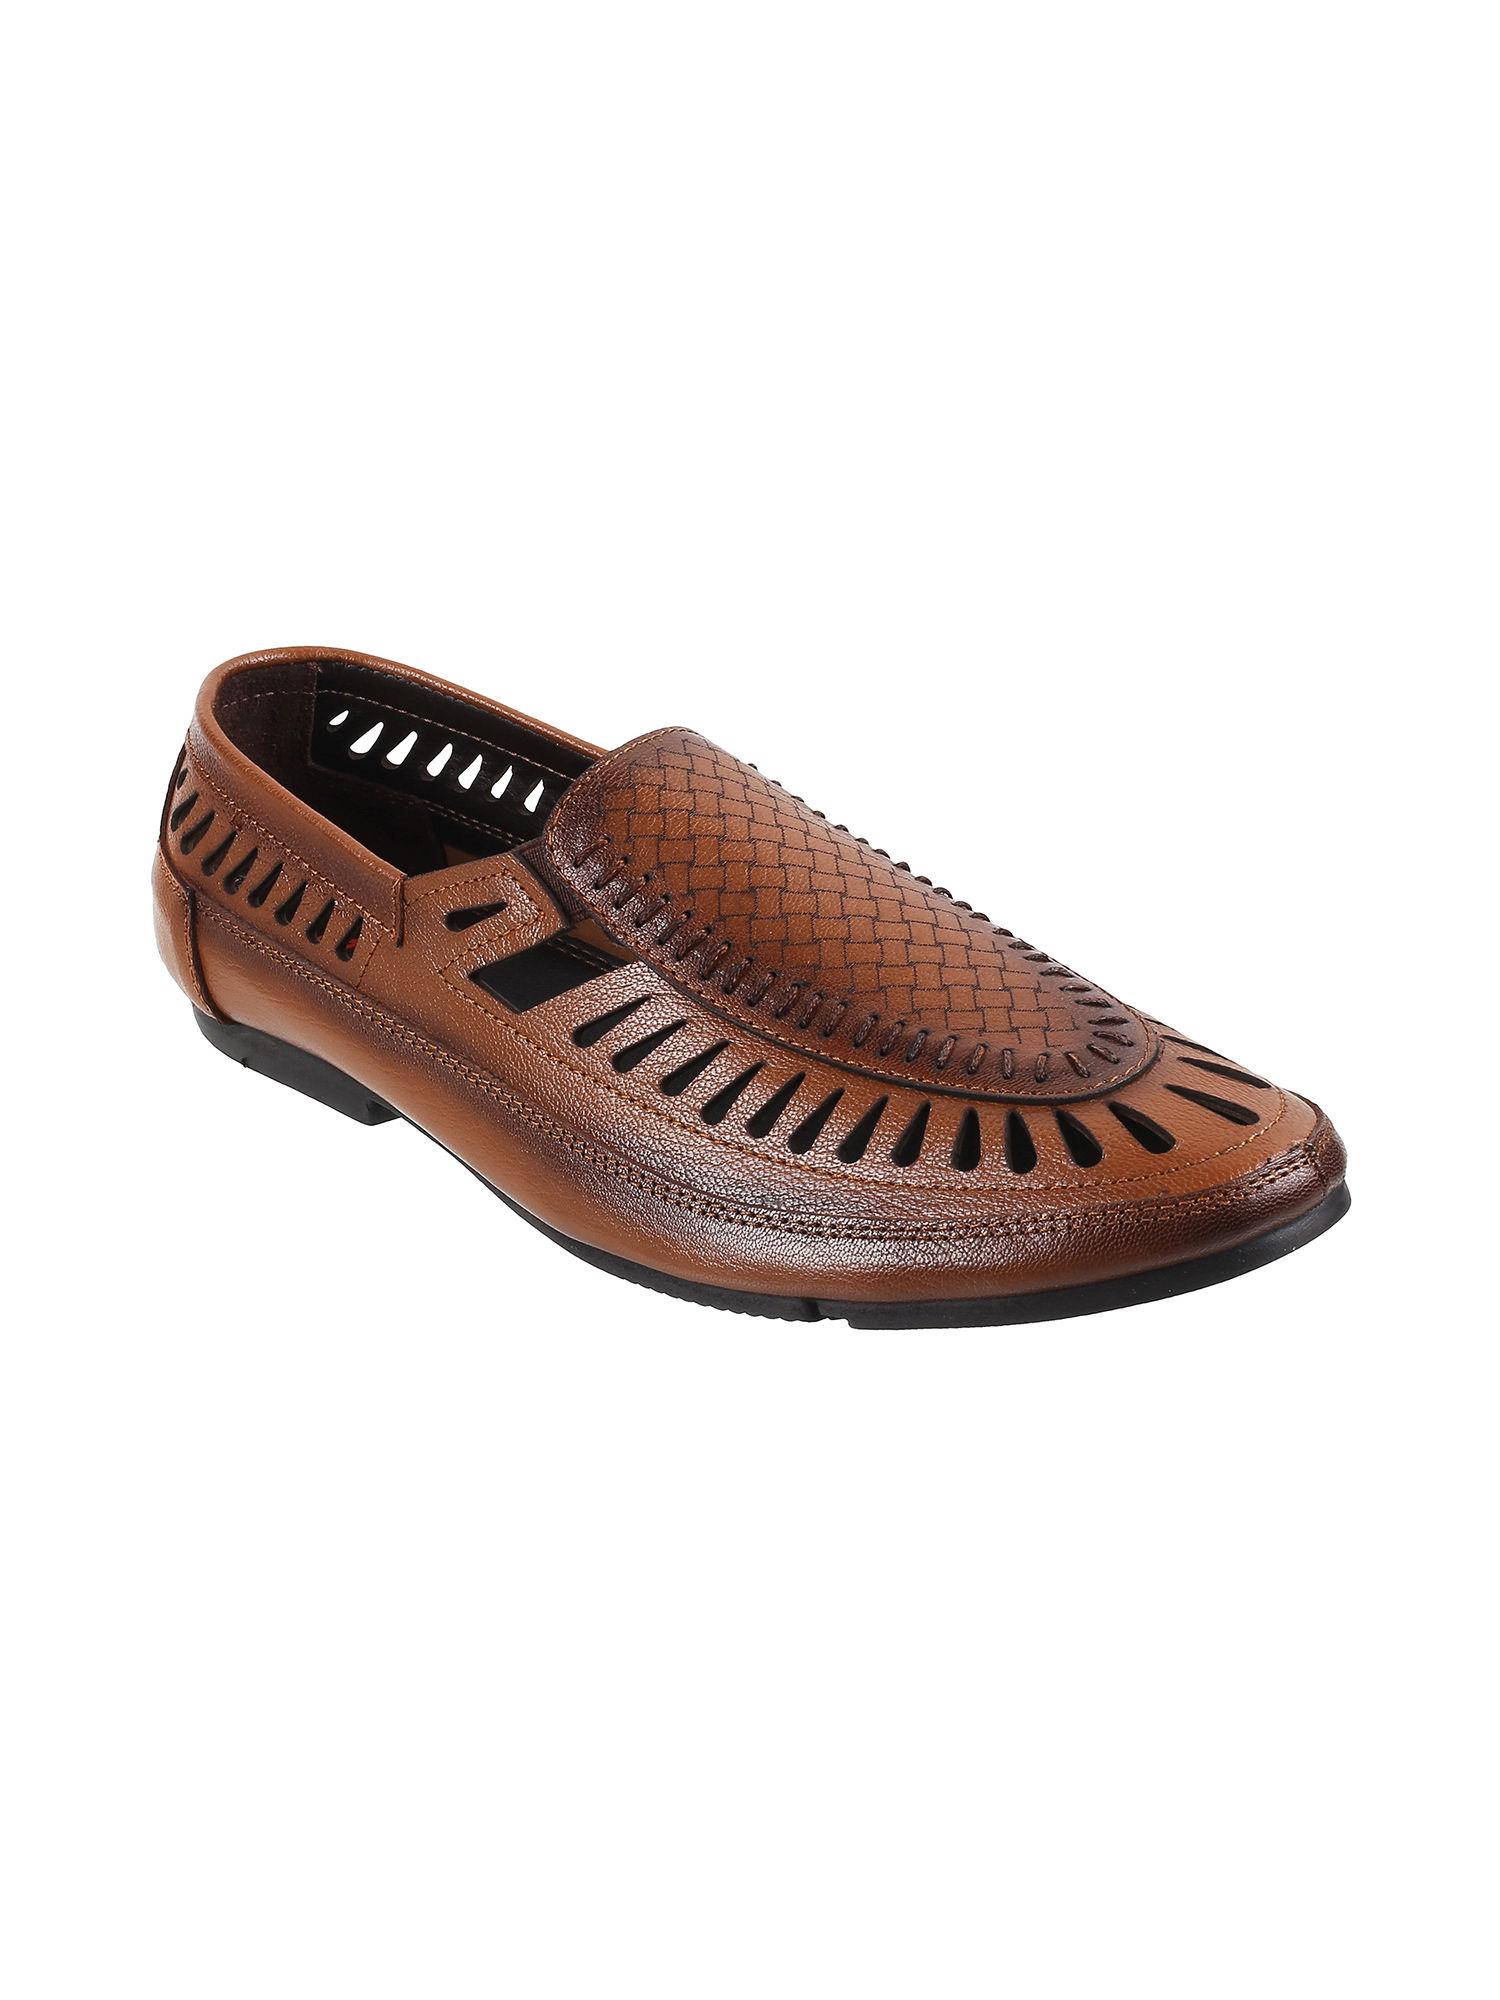 men leather tan sandals